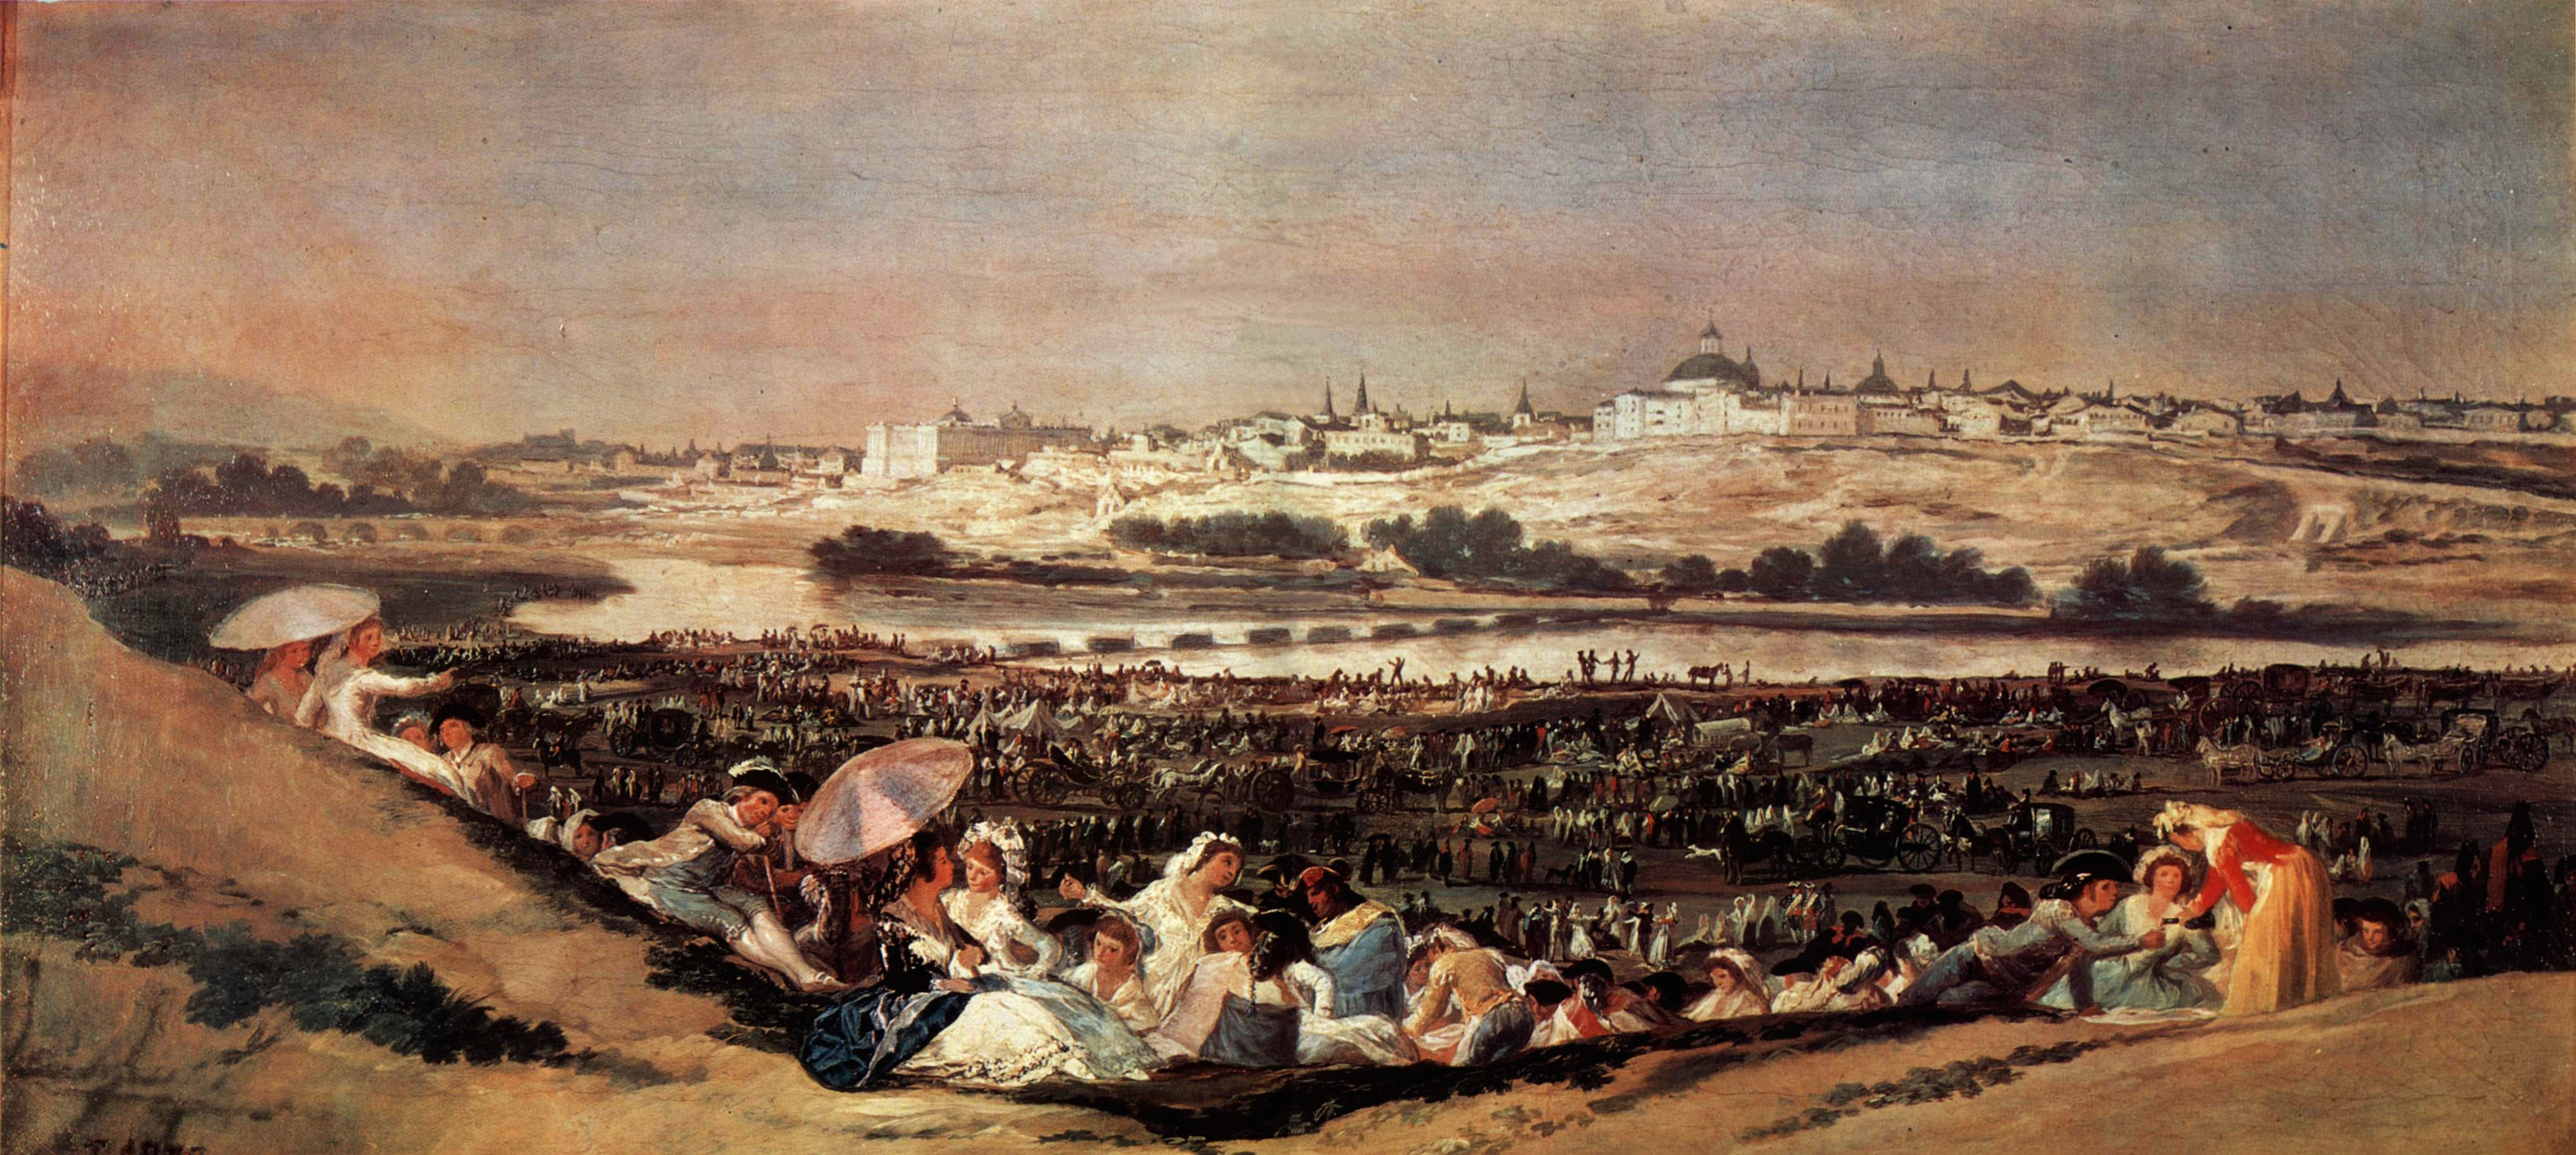 Escena festiva a orillas del Manzanares. Francisco de Goya. Óleo sobre lienzo, 1788